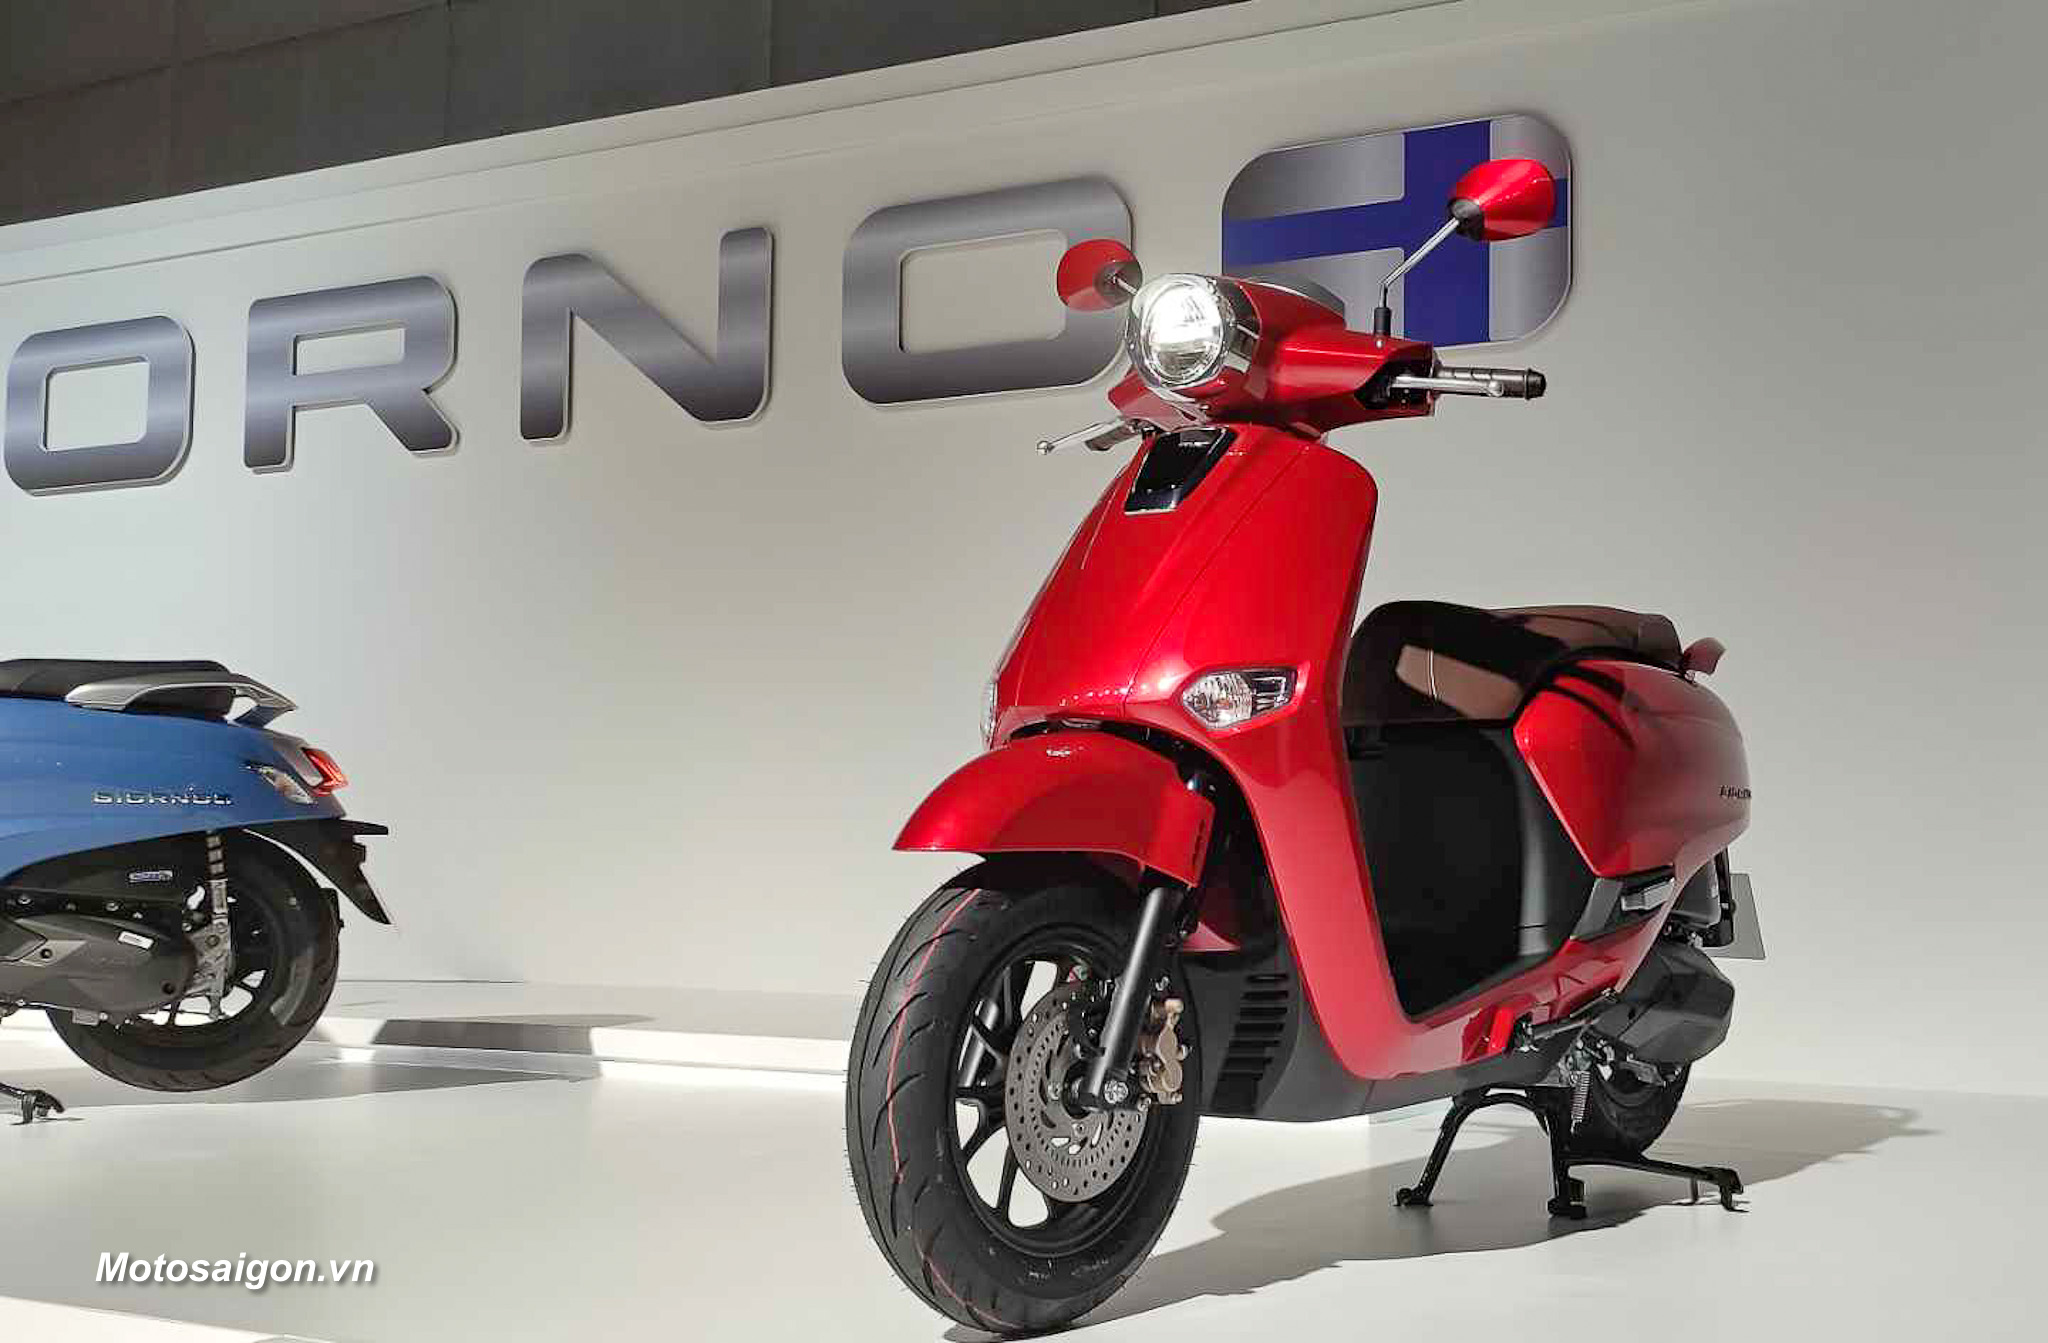 Honda Giorno 50cc  Mẫu xe được giới trẻ săn lùng ráo riết  XE NHẬT ĐỘC